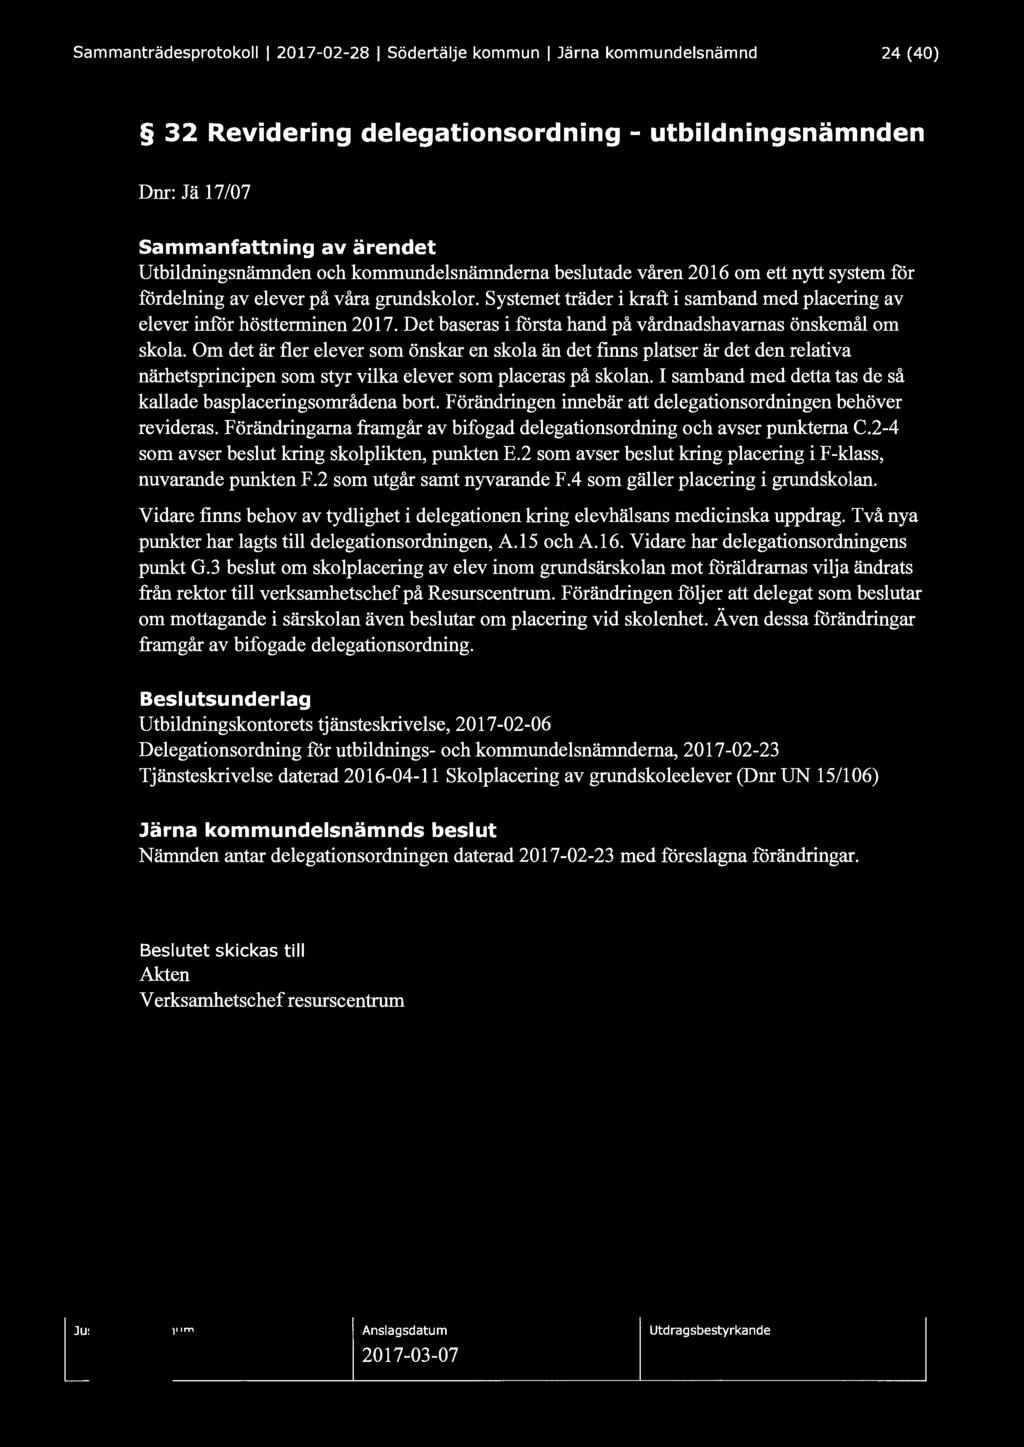 Sammanträdesprotokoll l 2017-02-28 1 Södertälje kommun l Järna kommundelsnämnd 24 (40) 32 Revidering delegationsordning - utbildningsnämnden Dnr: J ä 17/07 Sammanfattning av ärendet